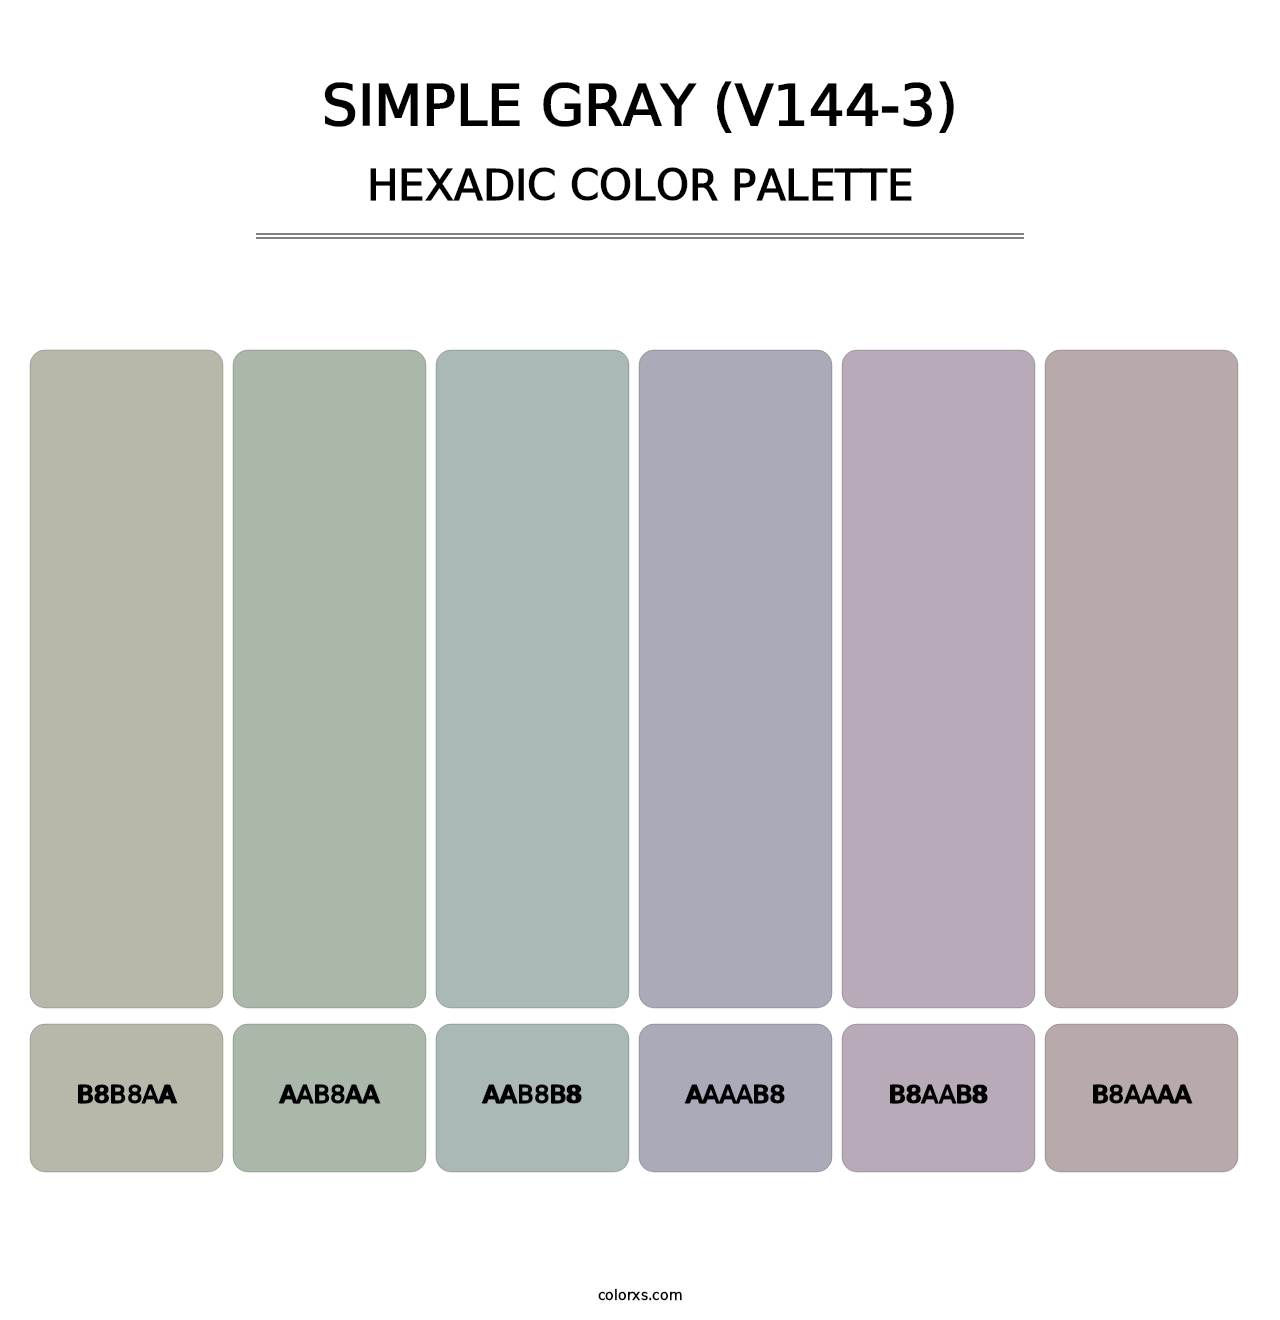 Simple Gray (V144-3) - Hexadic Color Palette